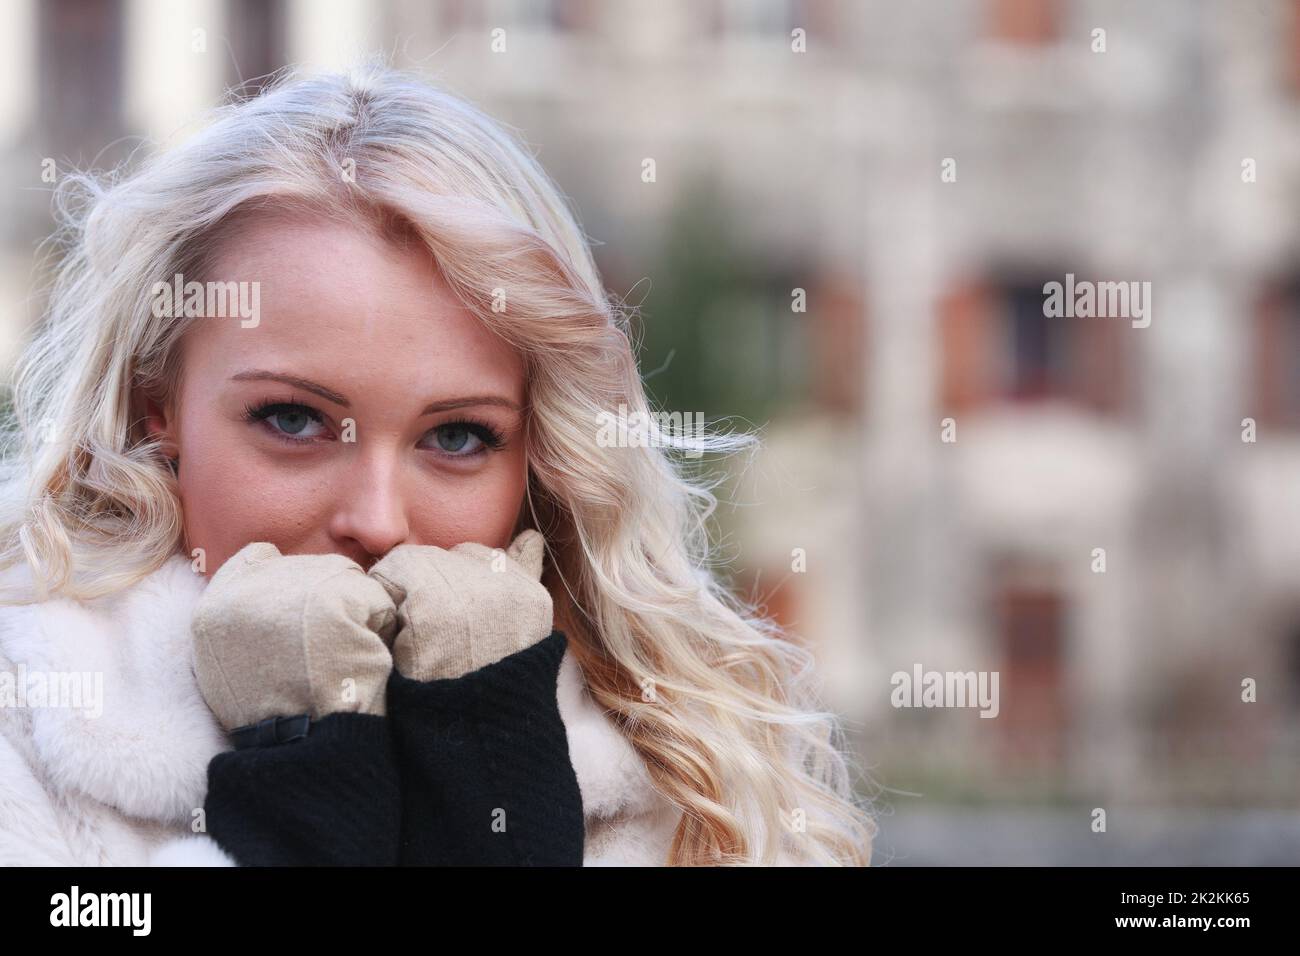 Rücksichtsvolle junge Frau, die ihre mit Handschuhen verkleideten Hände an ihr Gesicht hält Stockfoto